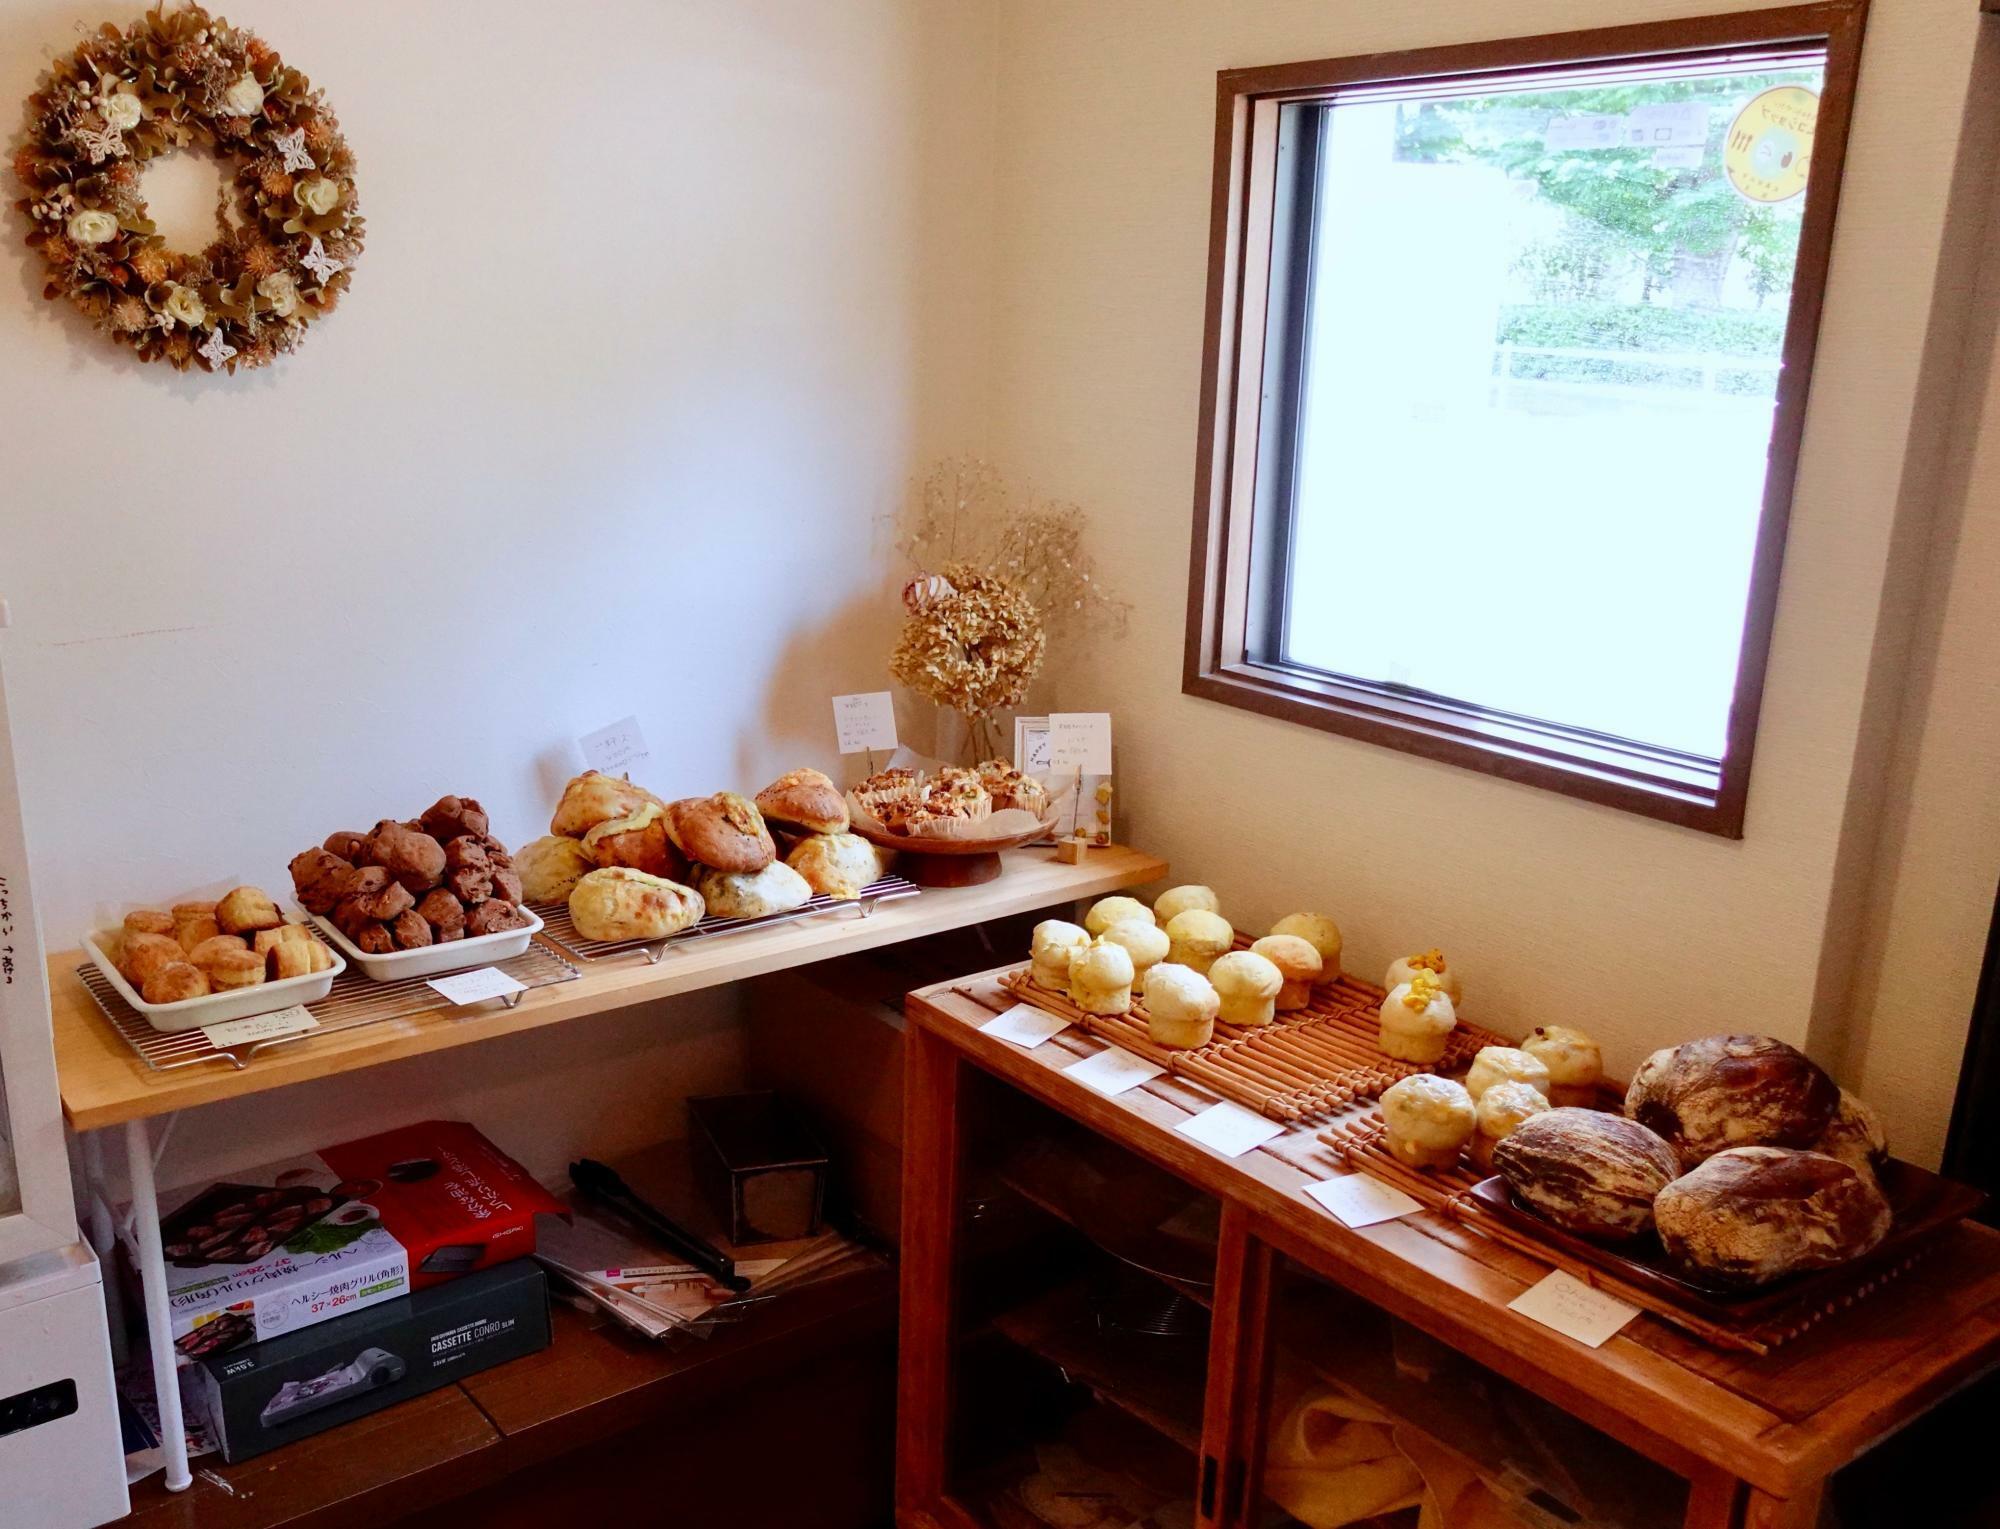 こぢんまりとした店内に並ぶパンたちが美しい